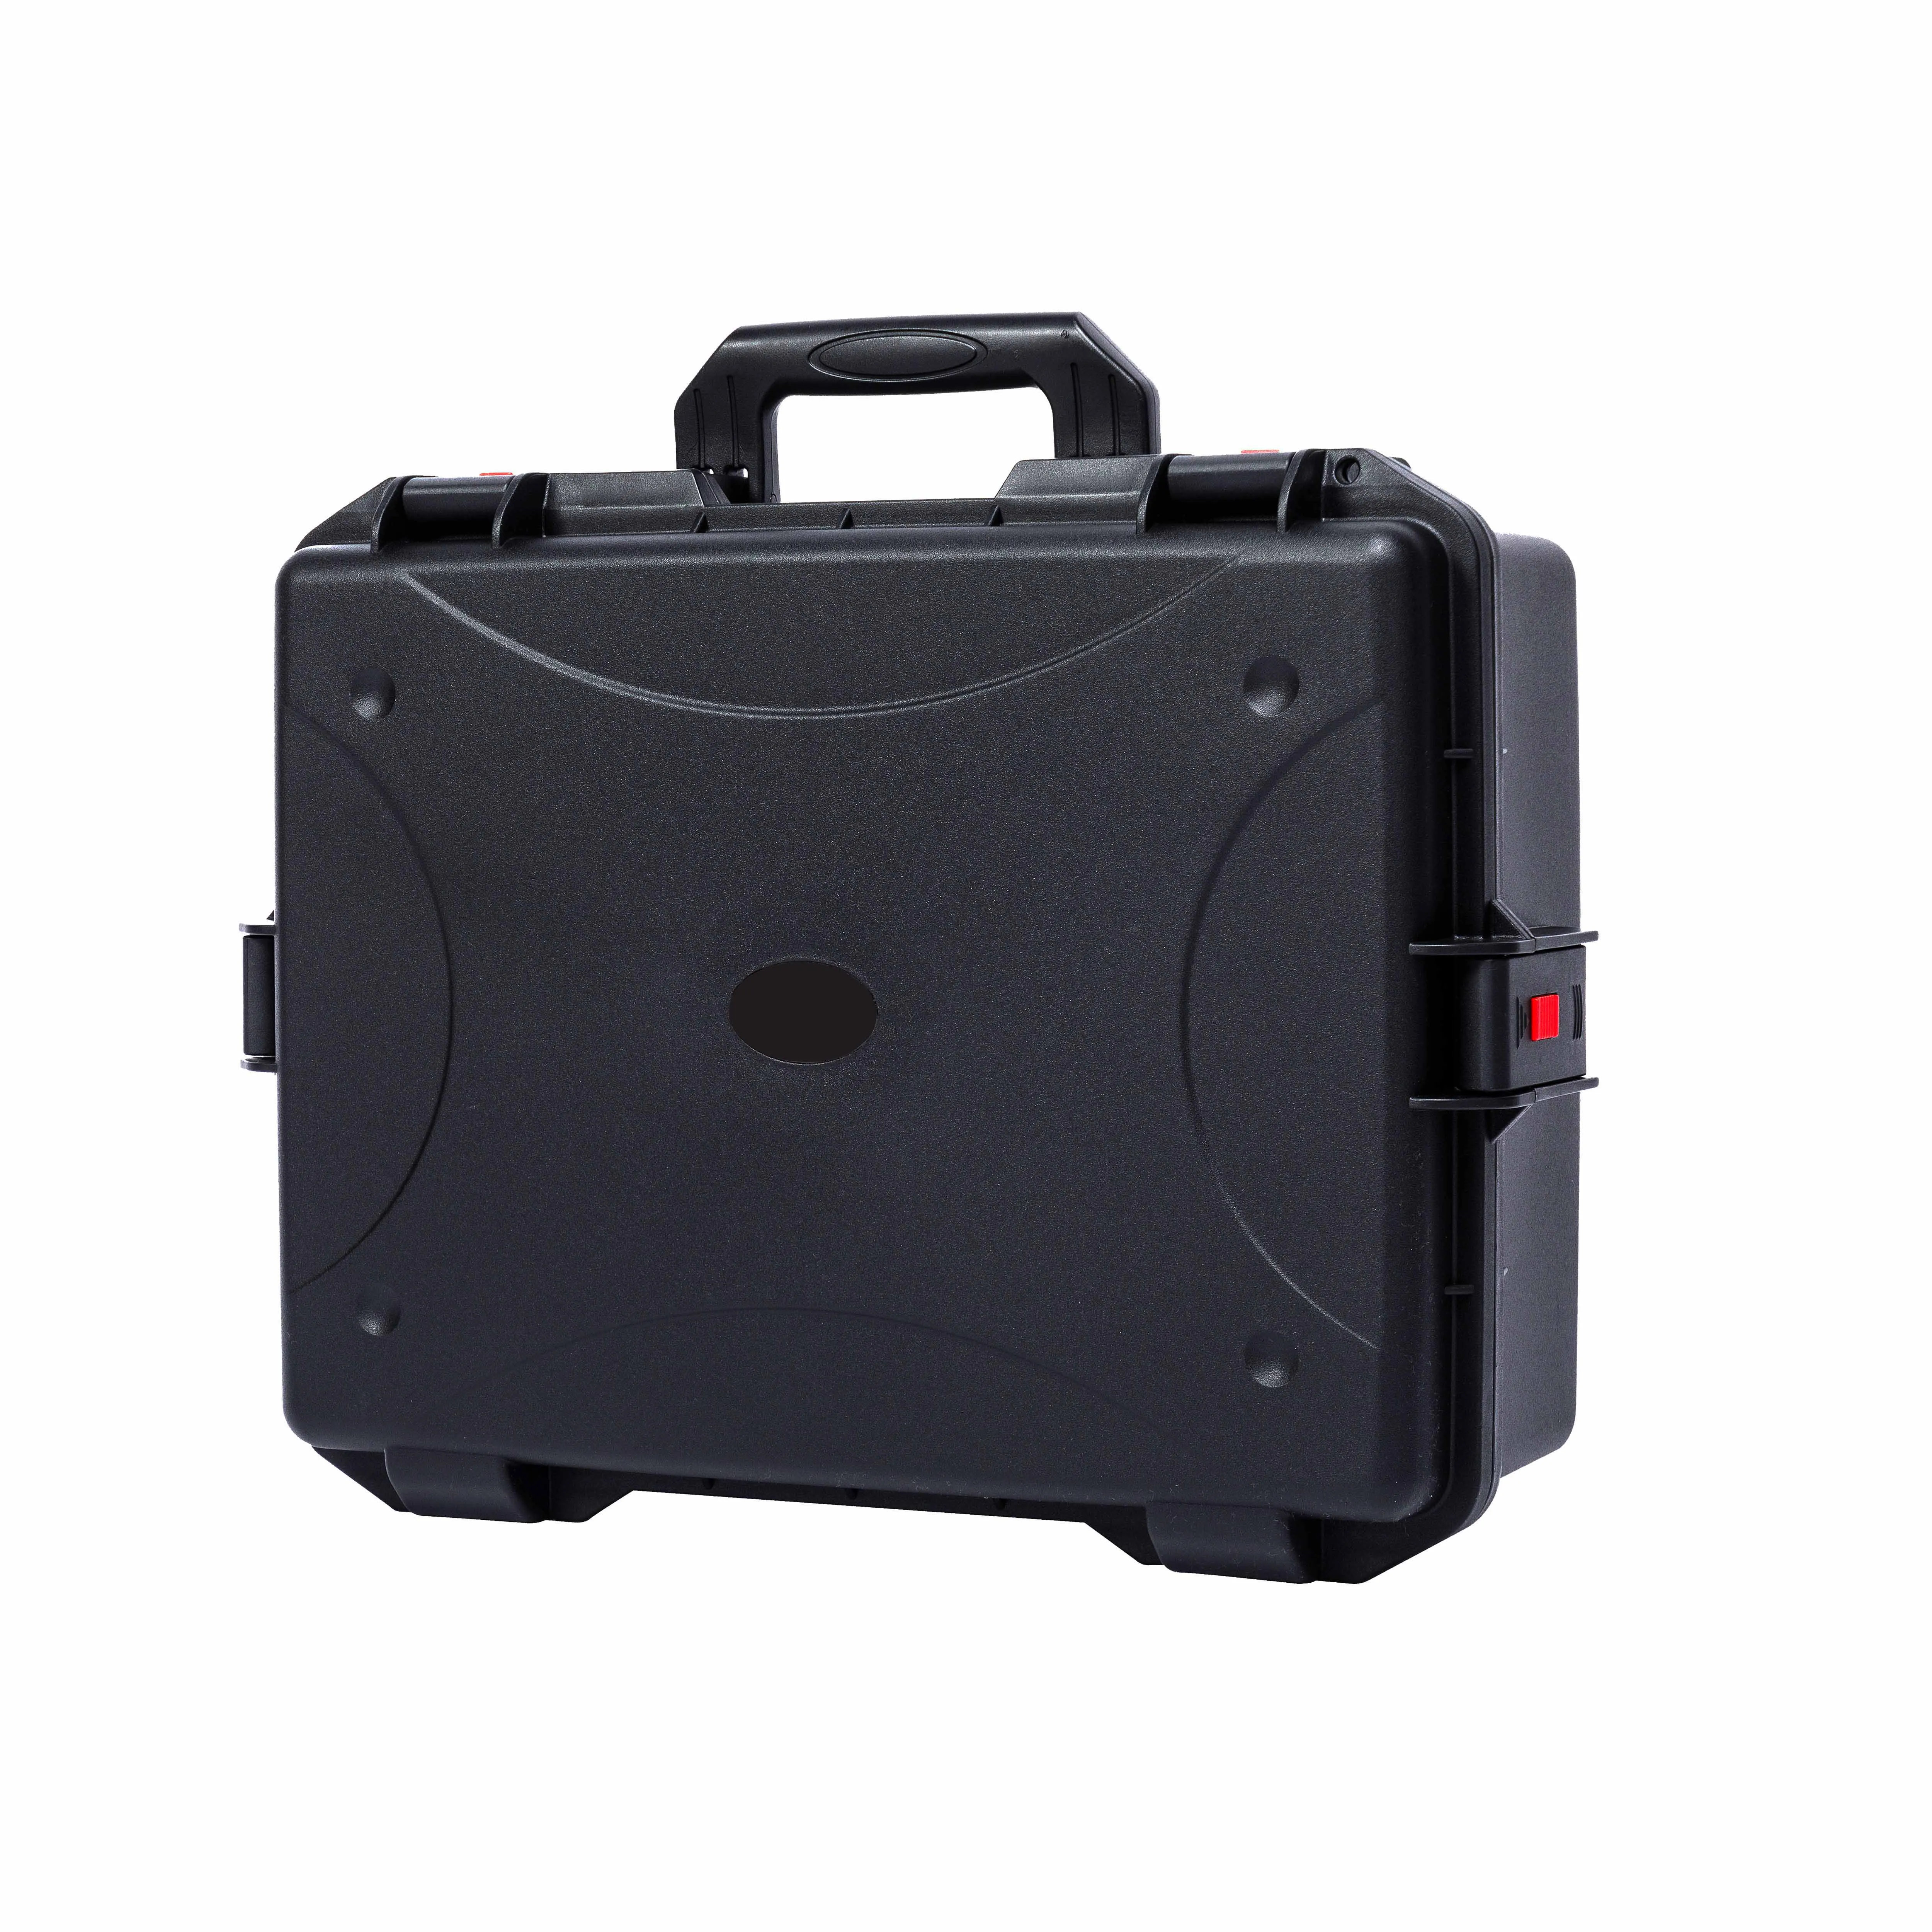 Caixa protetora impermeável multifuncional da segurança da anti-corrosão do plástico PP-X6002A, equipamento com inserção da espuma